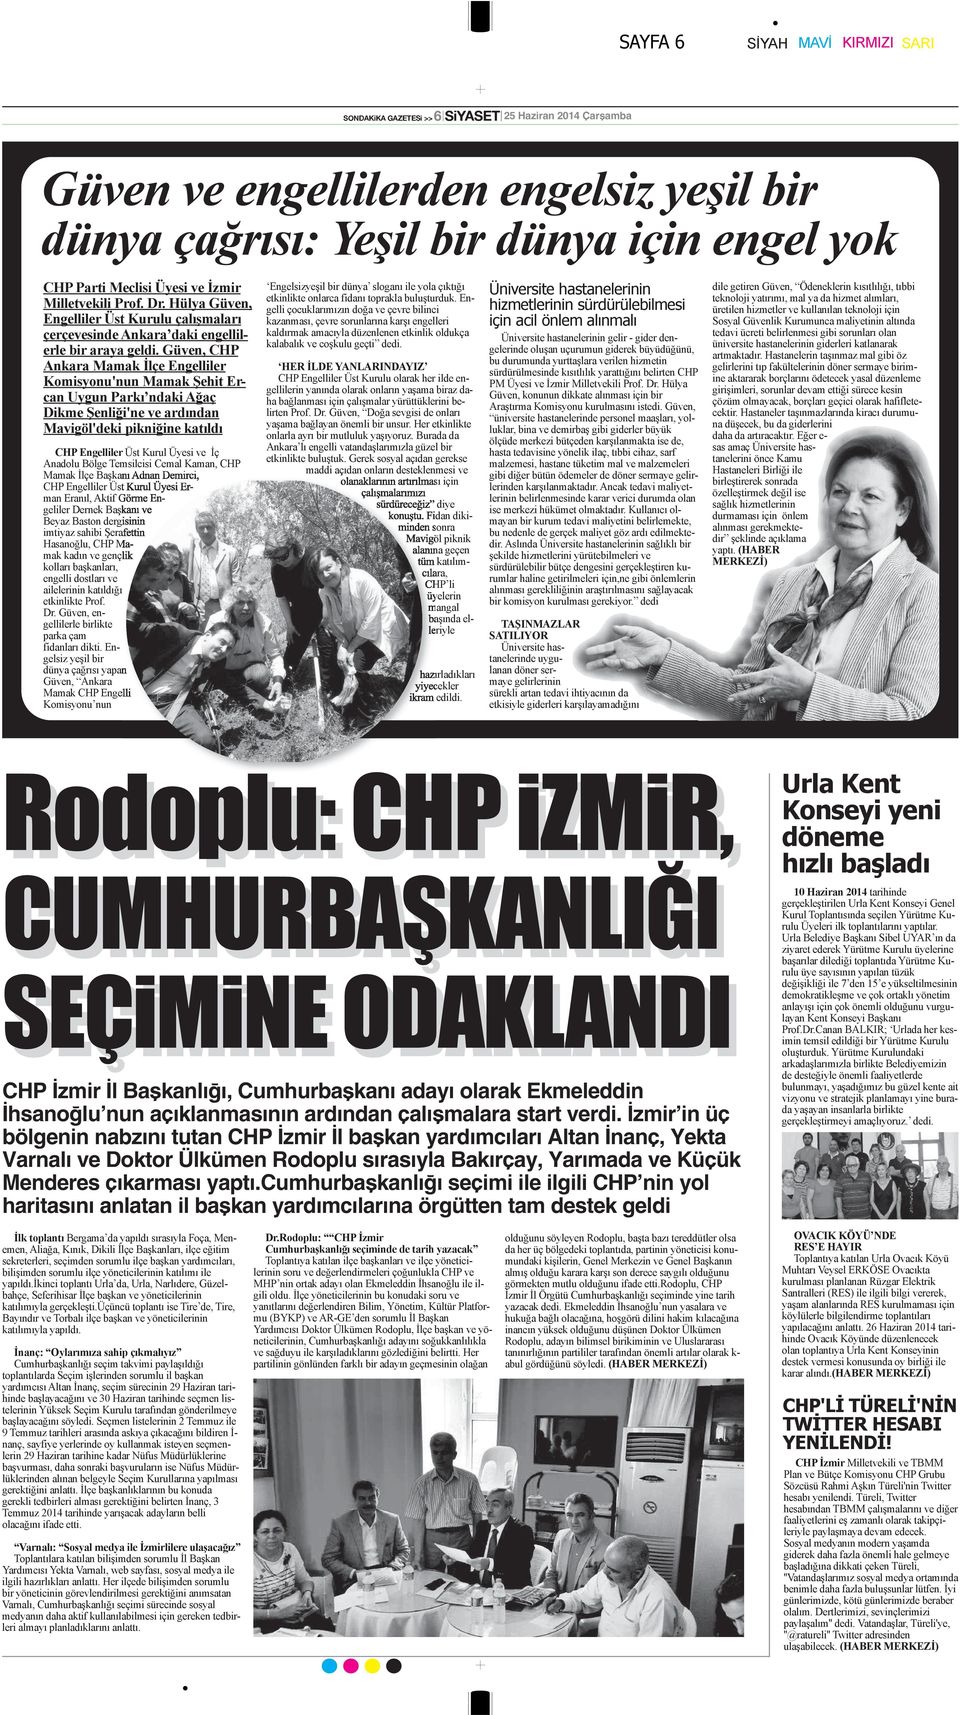 İzmir in üç bölgenin nabzını tutan CHP İzmir İl başkan yardımcıları Altan İnanç, Yekta Varnalı ve Doktor Ülkümen